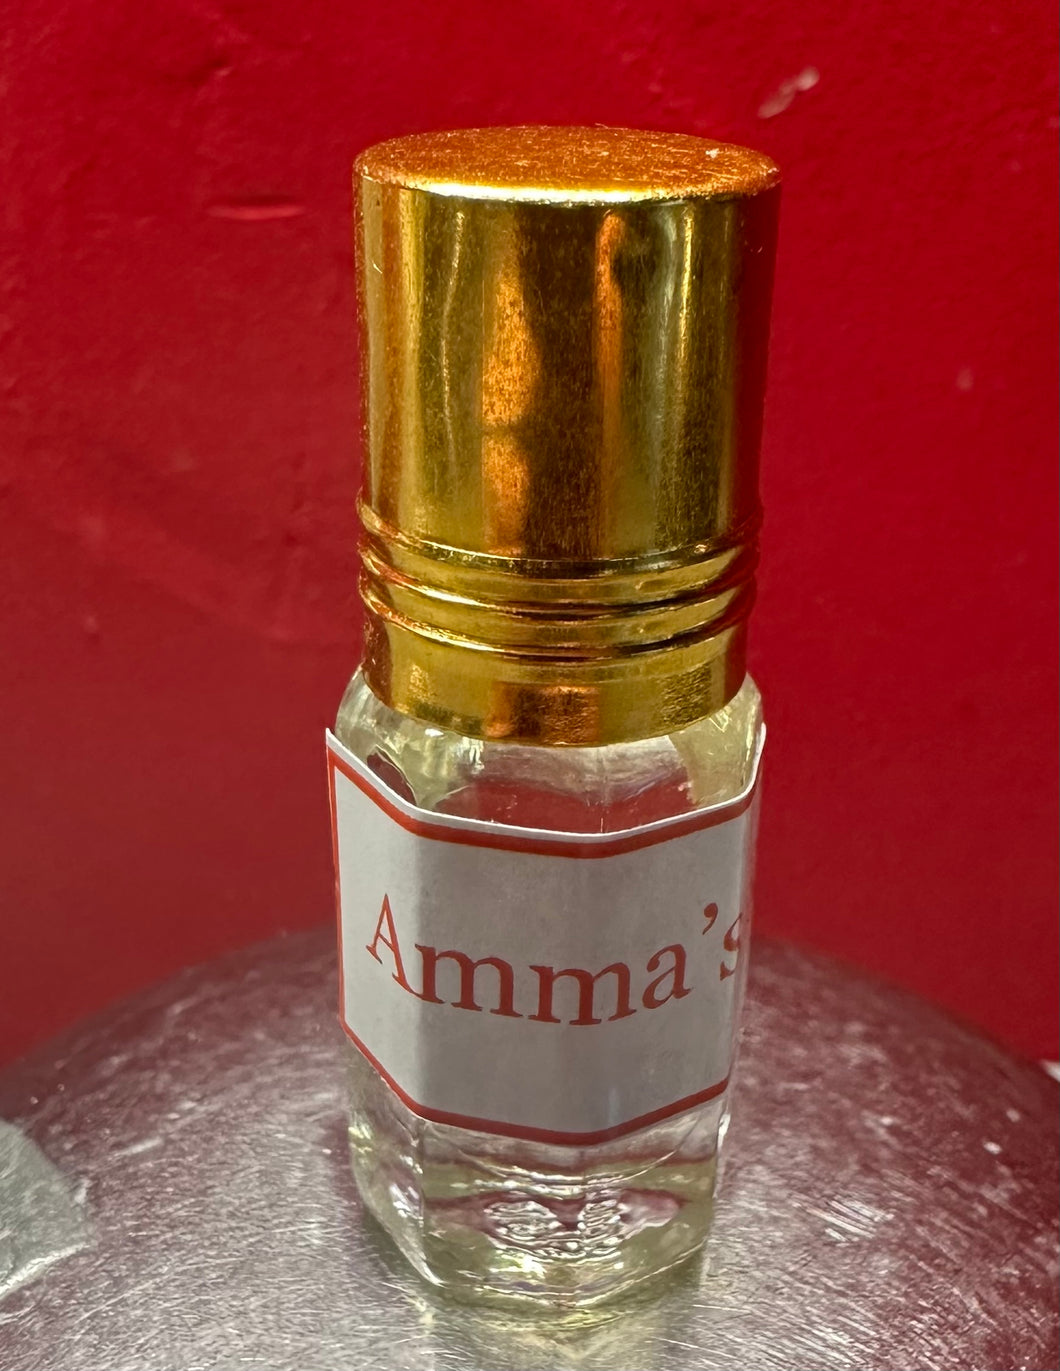 Ammas Rose aus Indien